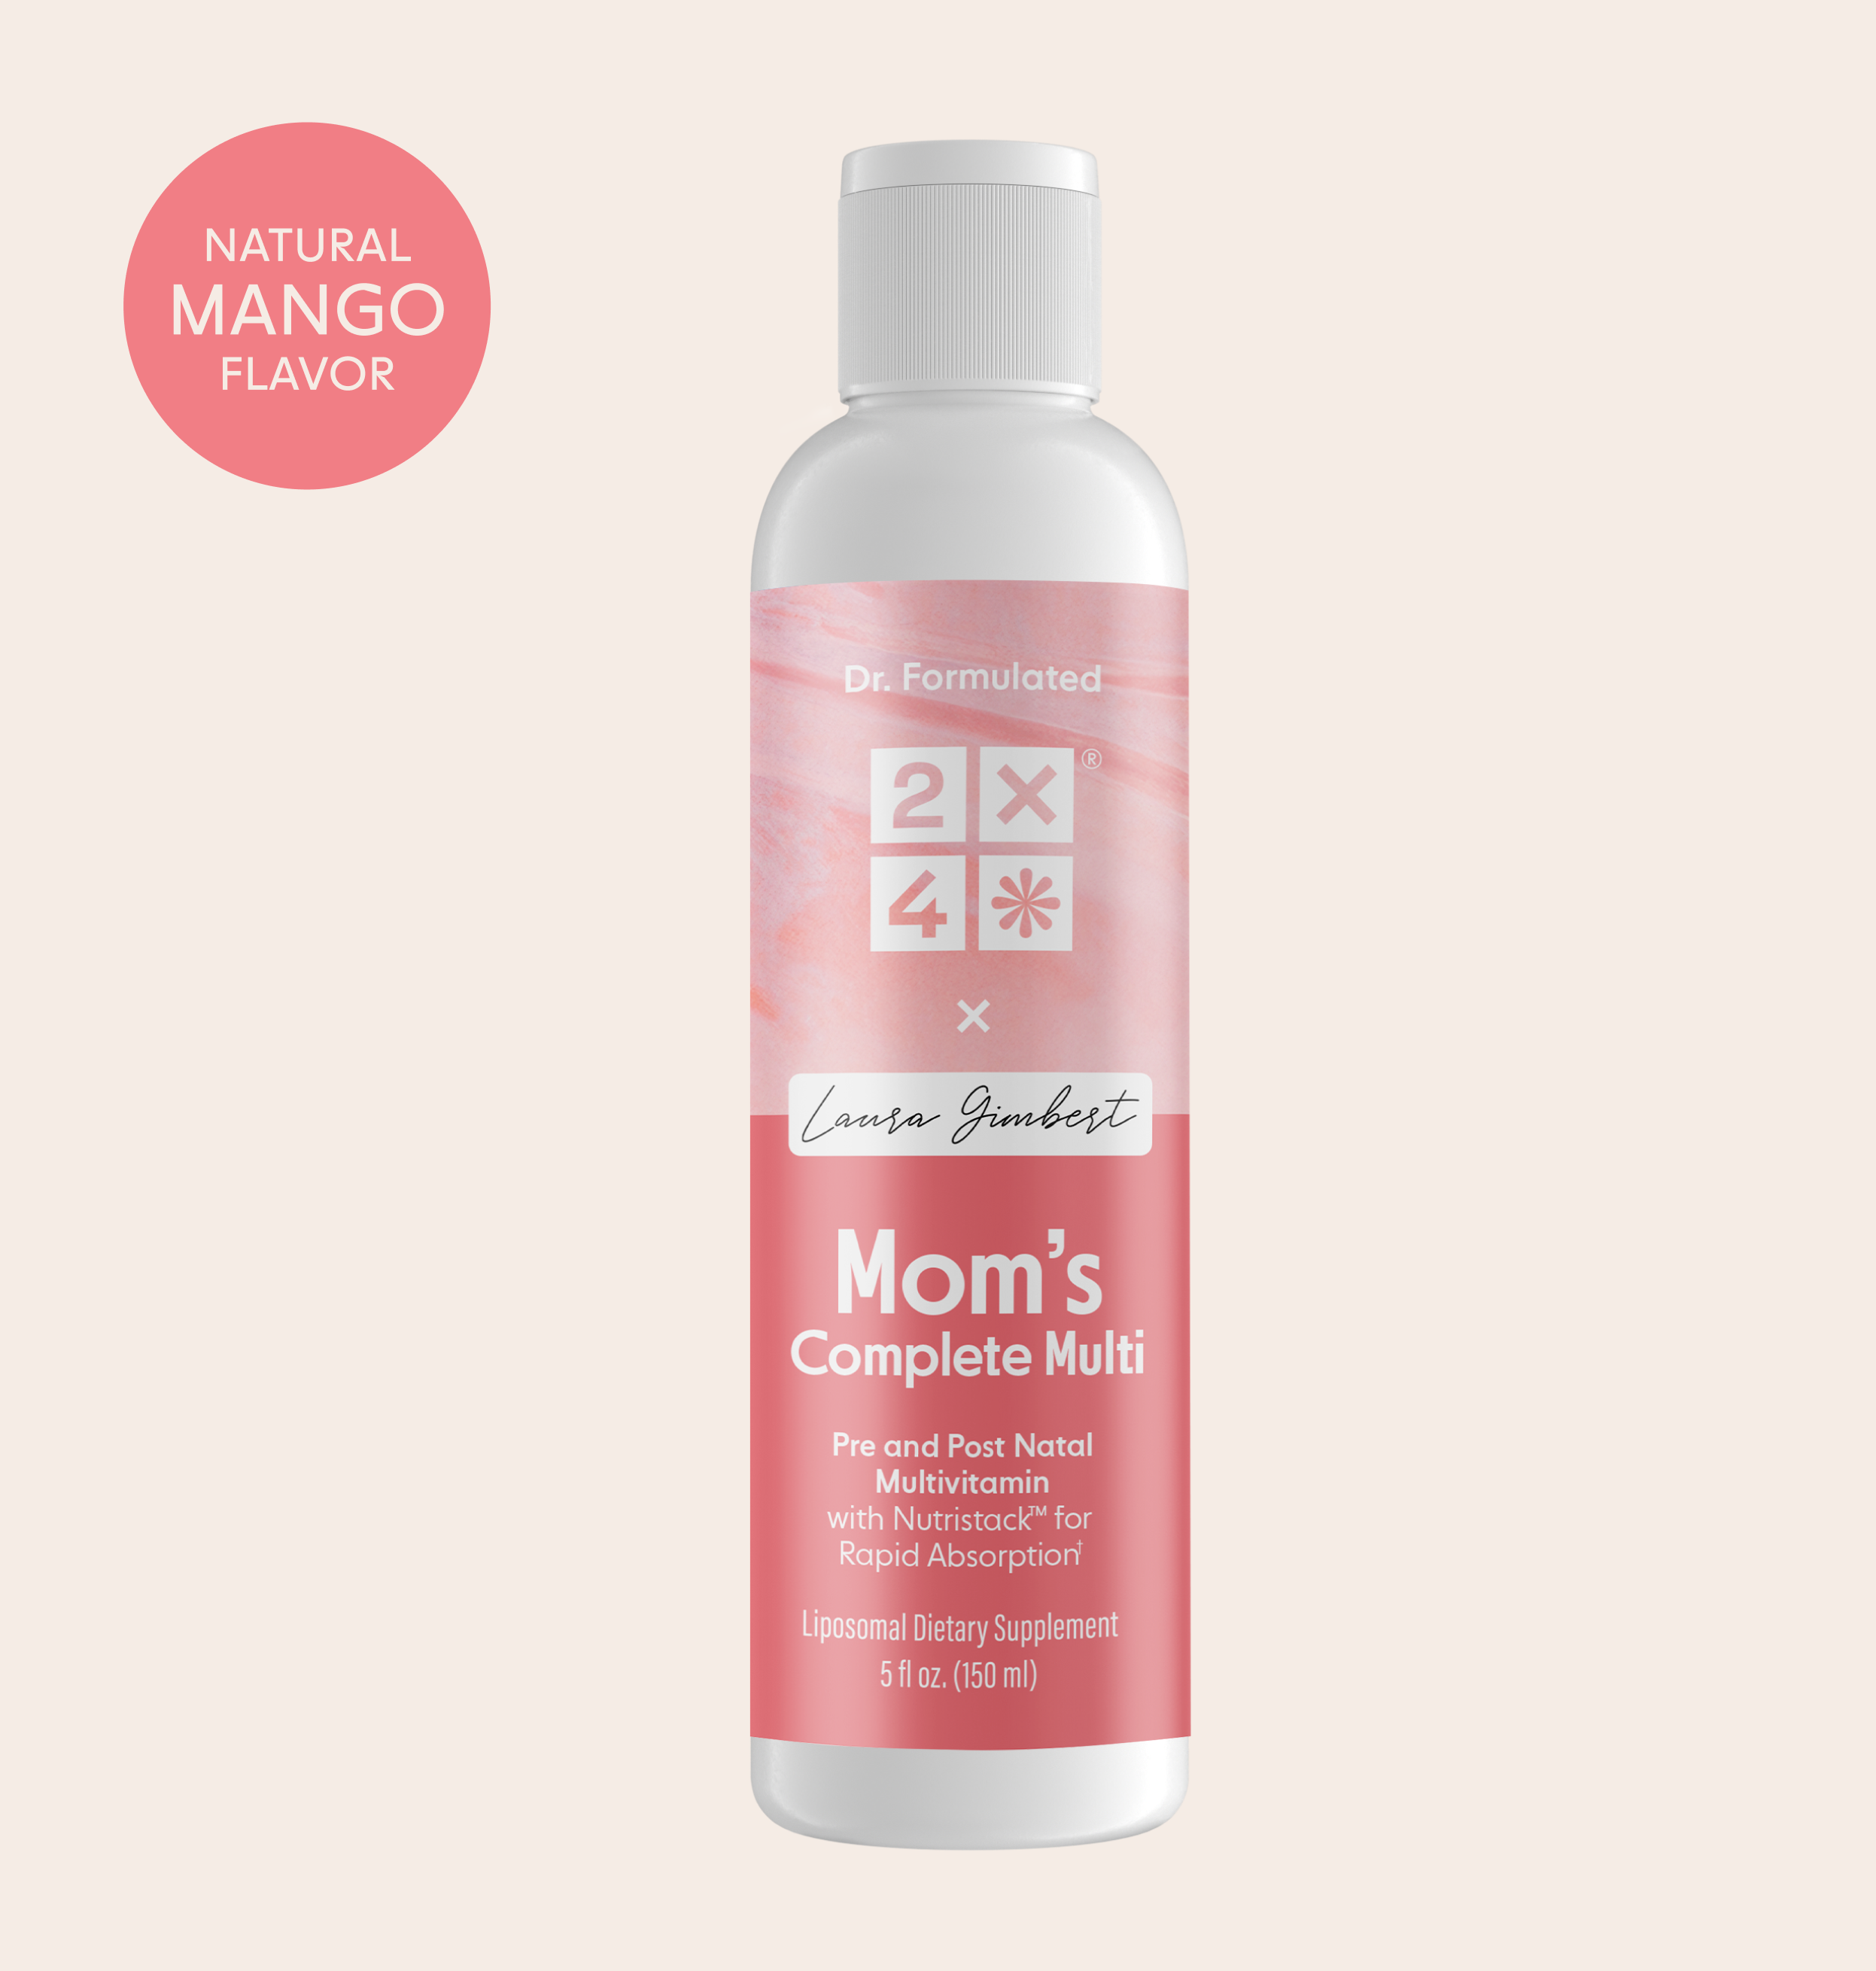 Weleda Baby Starter Kit Trial Sz kit ( Multi-Pack) - For Moms